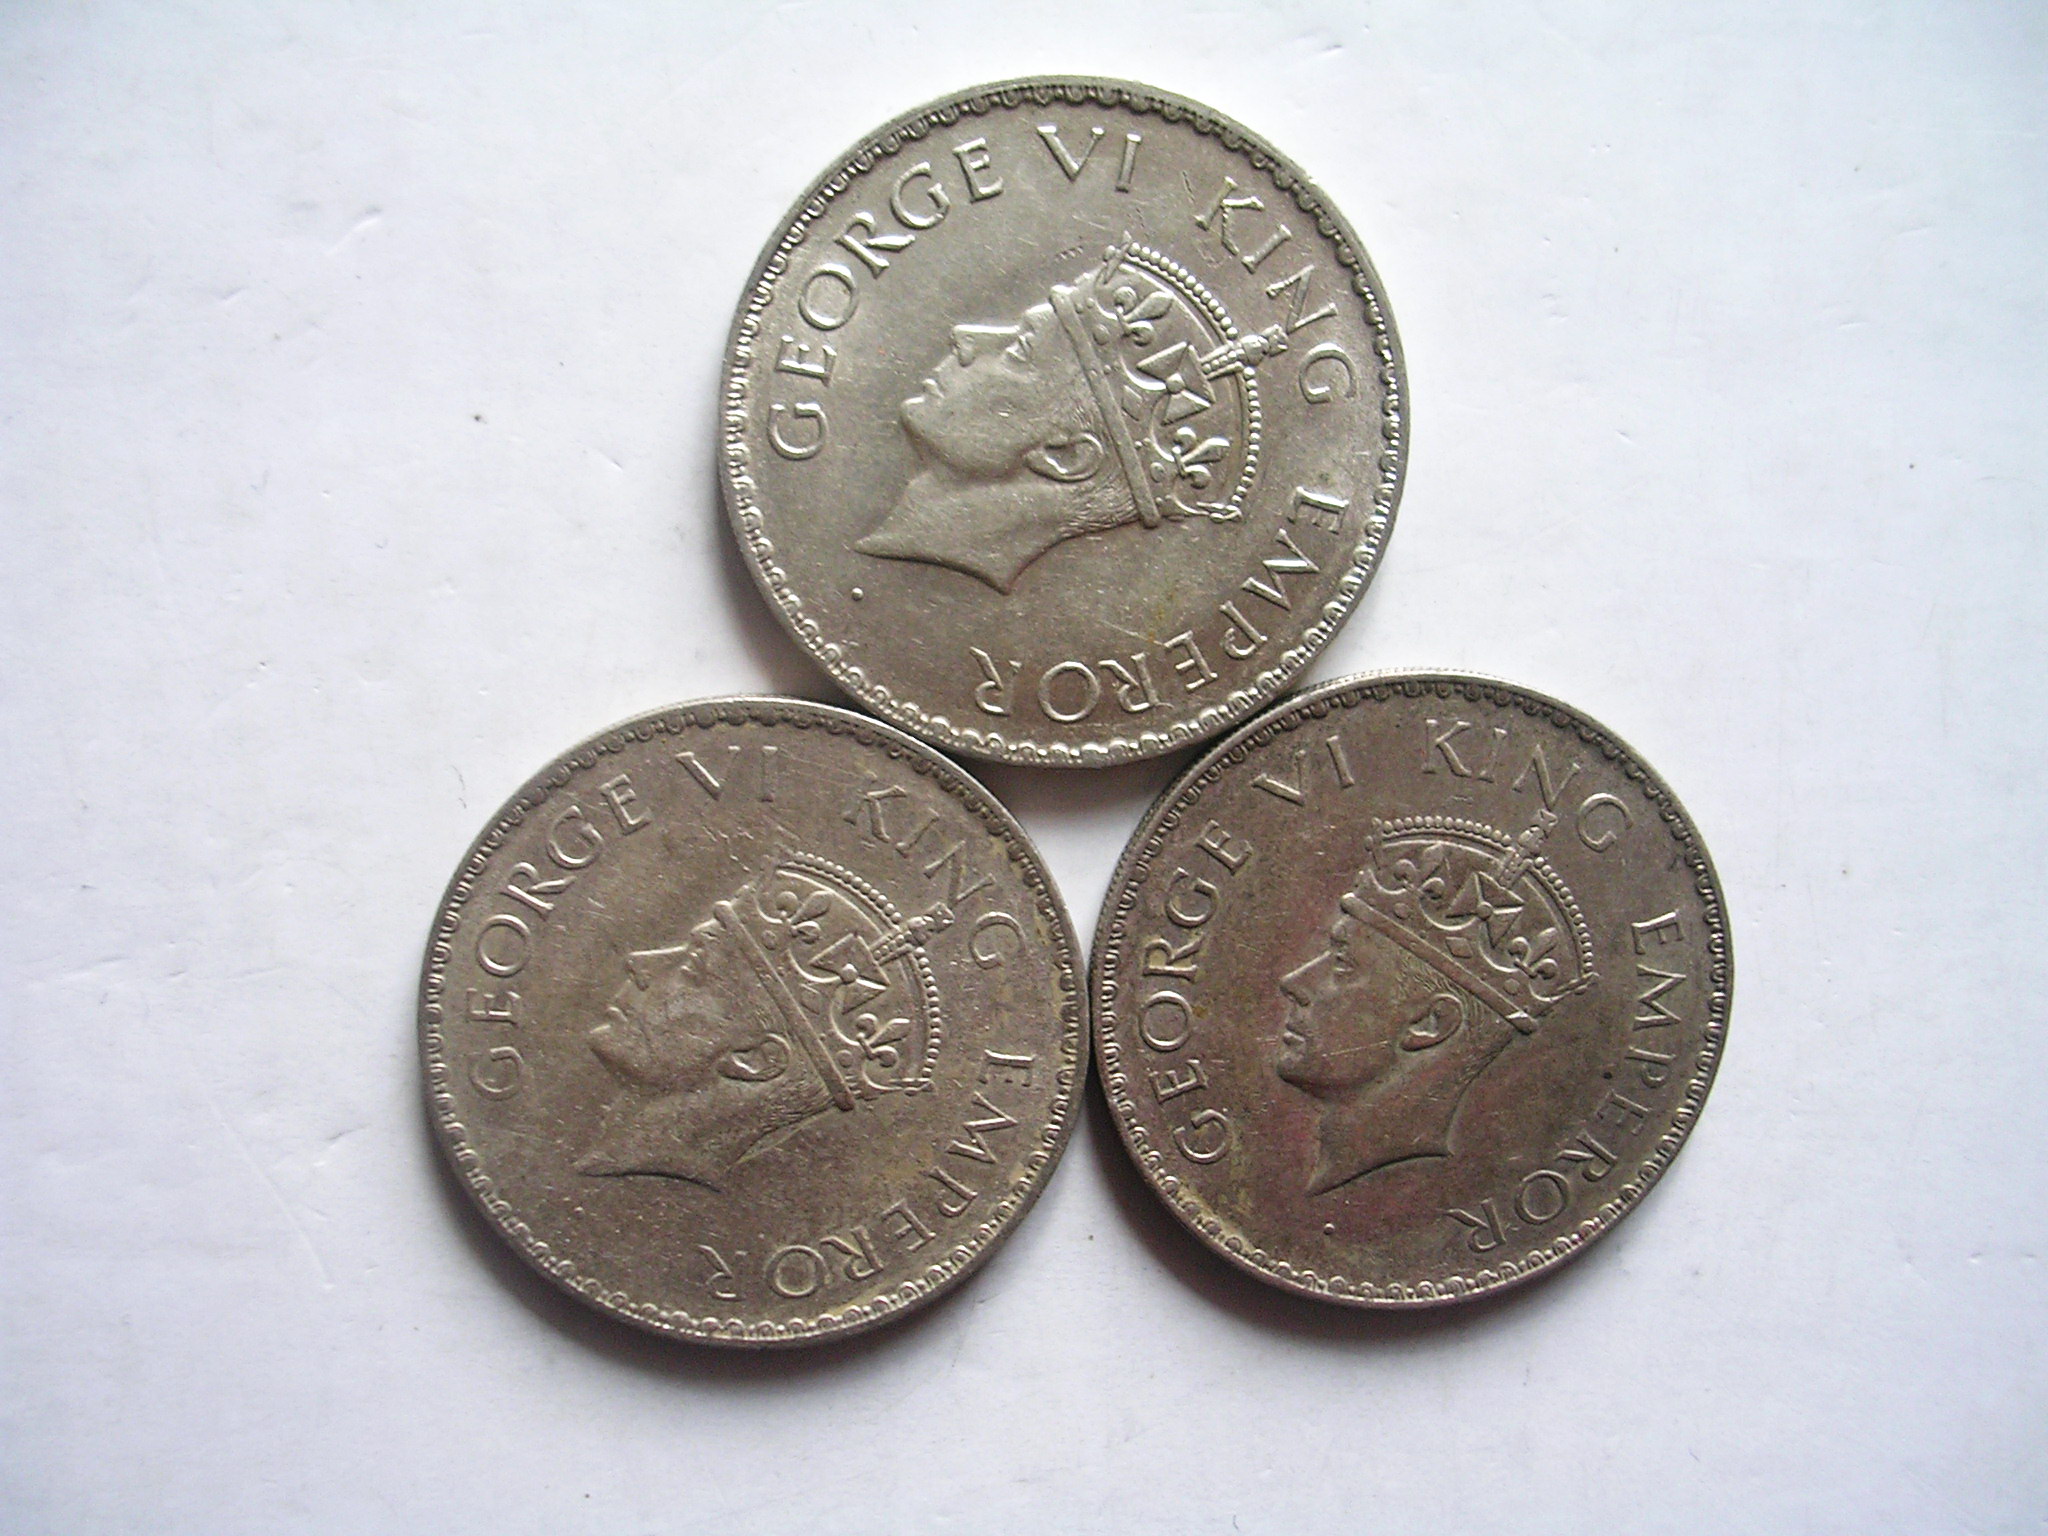 印度卢比银币百科图片